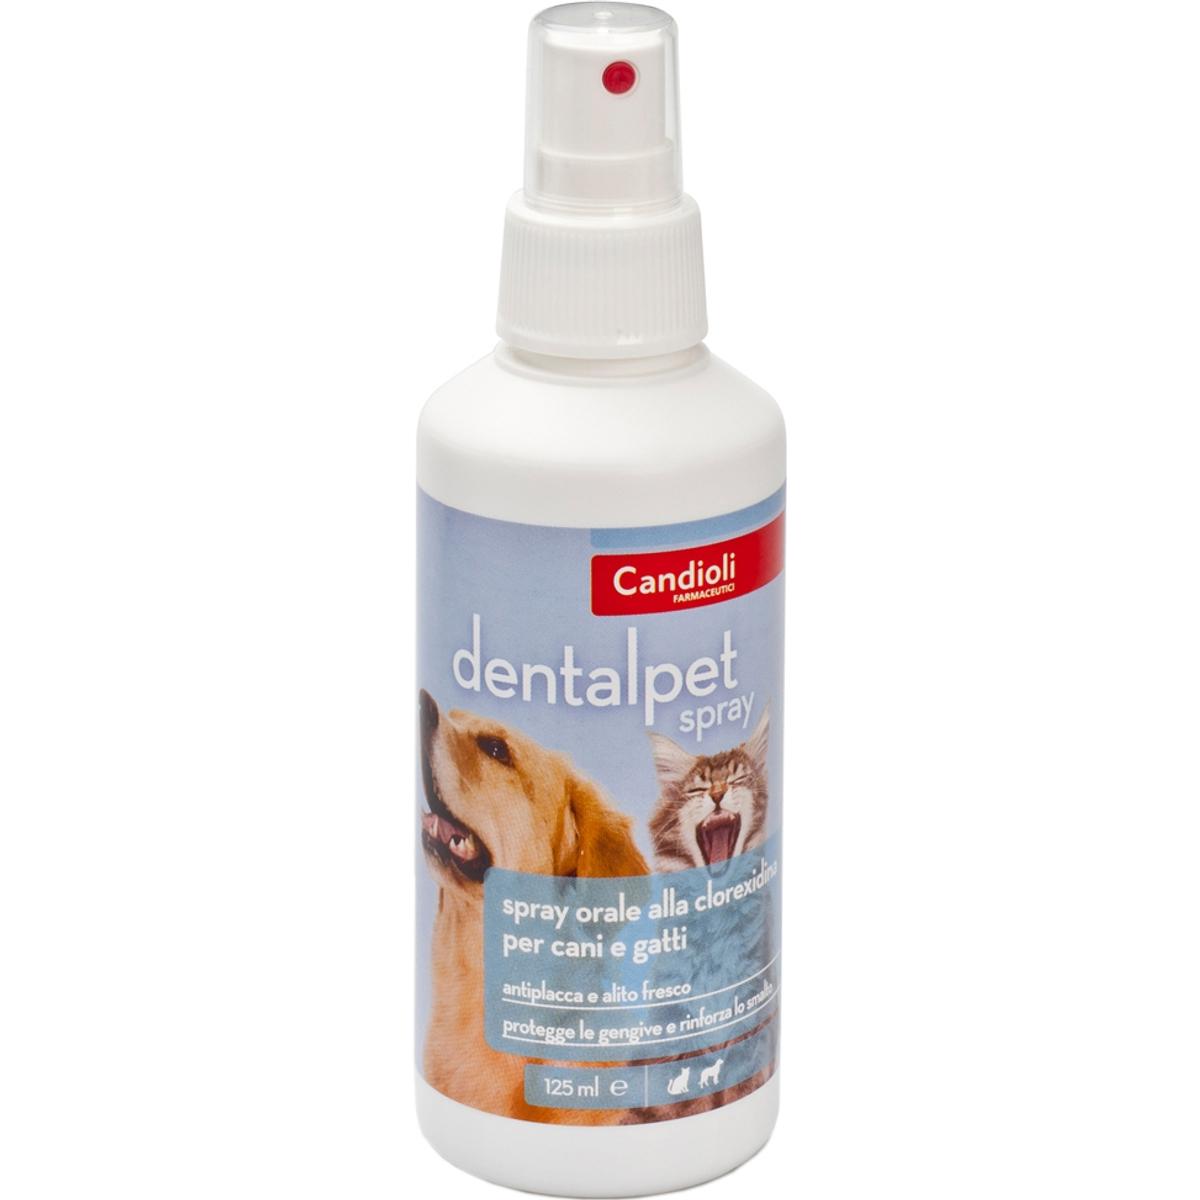 Selected image for CANDIOLI Oralni sprej za pse i mačke Dentalpet, 125 ml